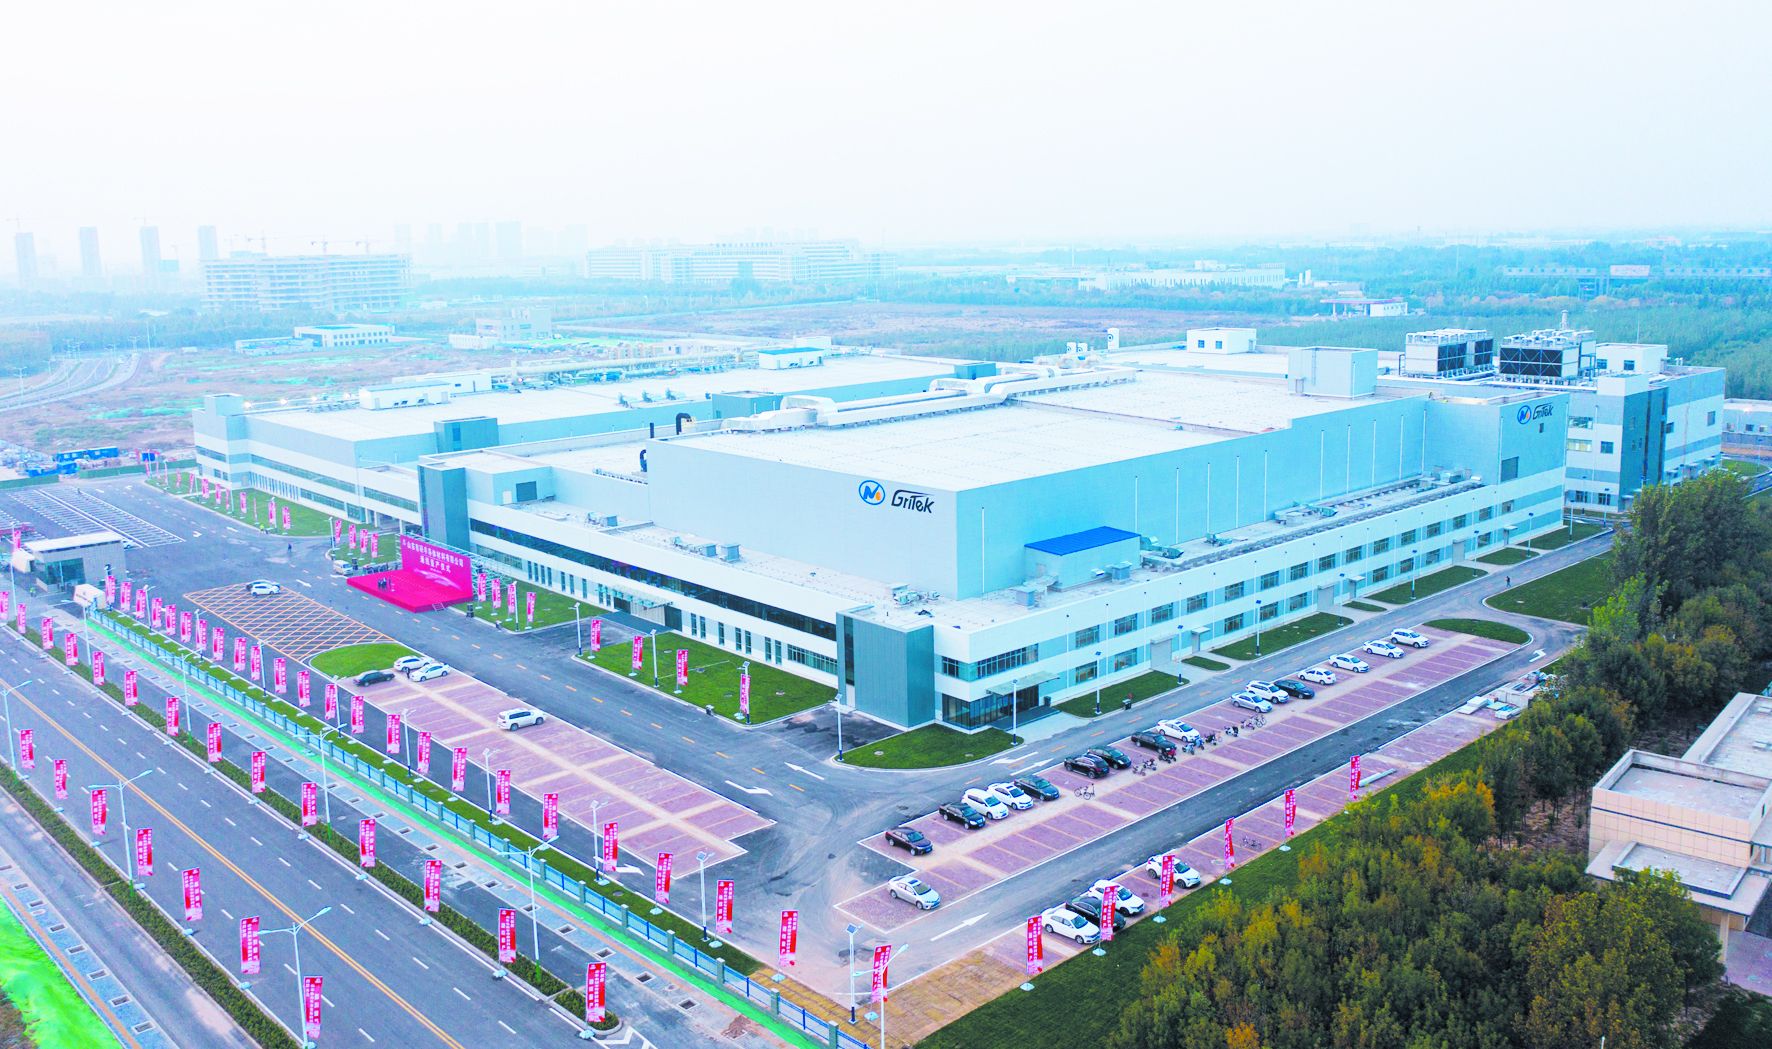 山东有研半导体材料有限公司实现集成电路用大尺寸硅材料通线量产。 记者刘振兴摄